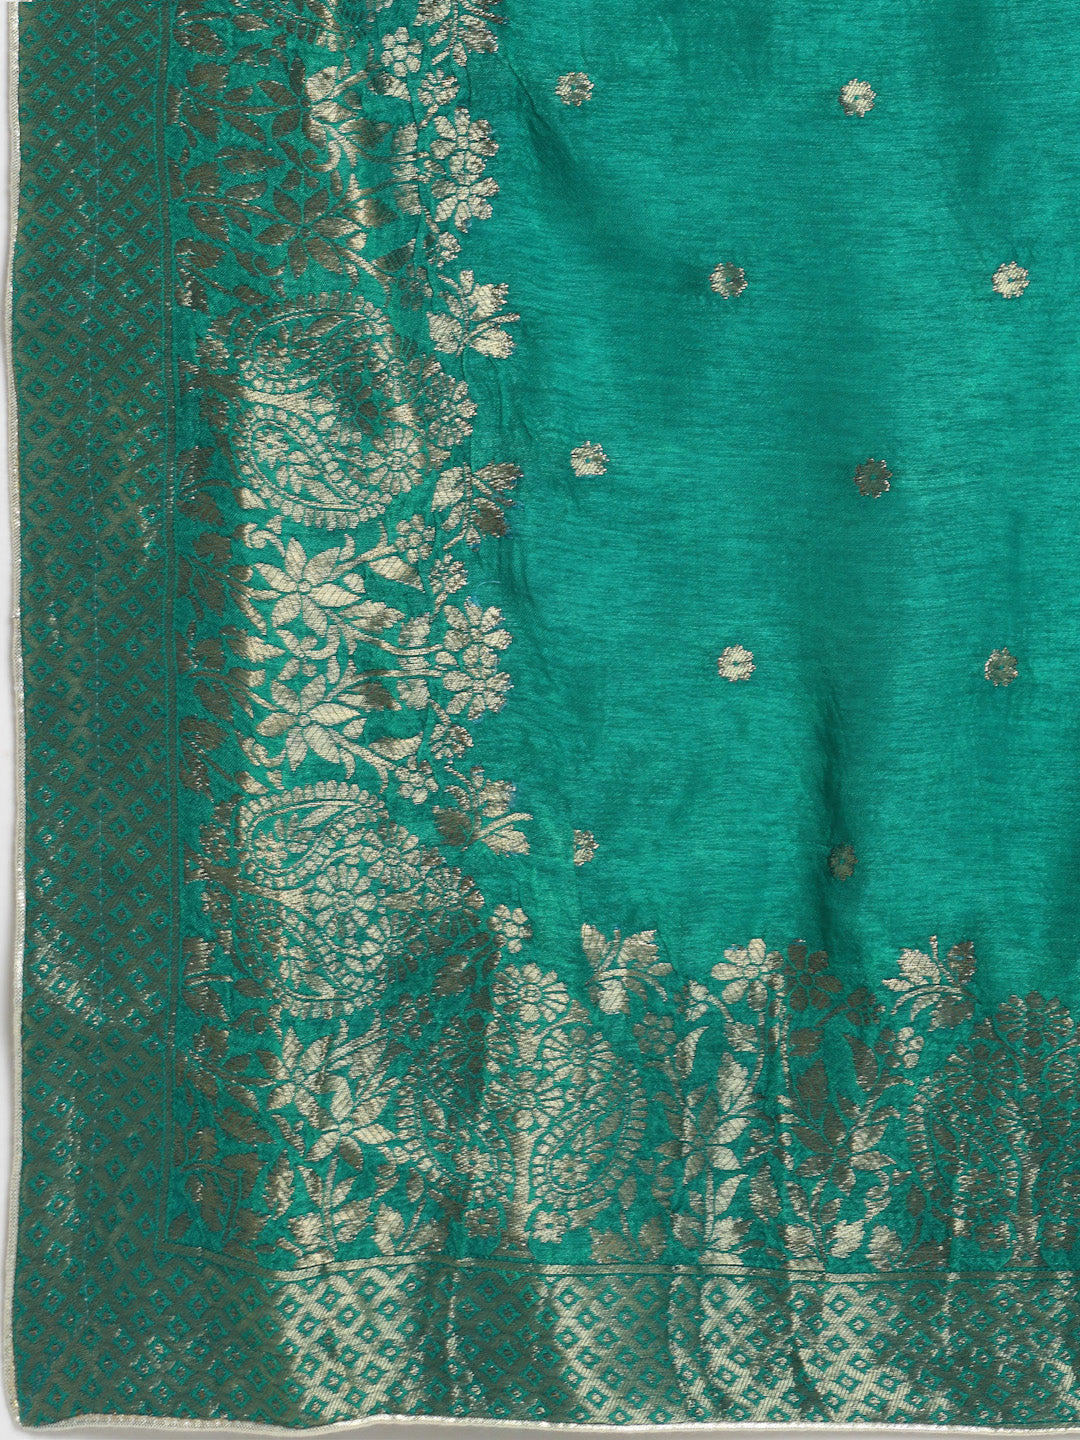 Women's Regal Green Brocade Kurti With Gathered Sharara And Banarasi Silk Dupatta - Anokherang